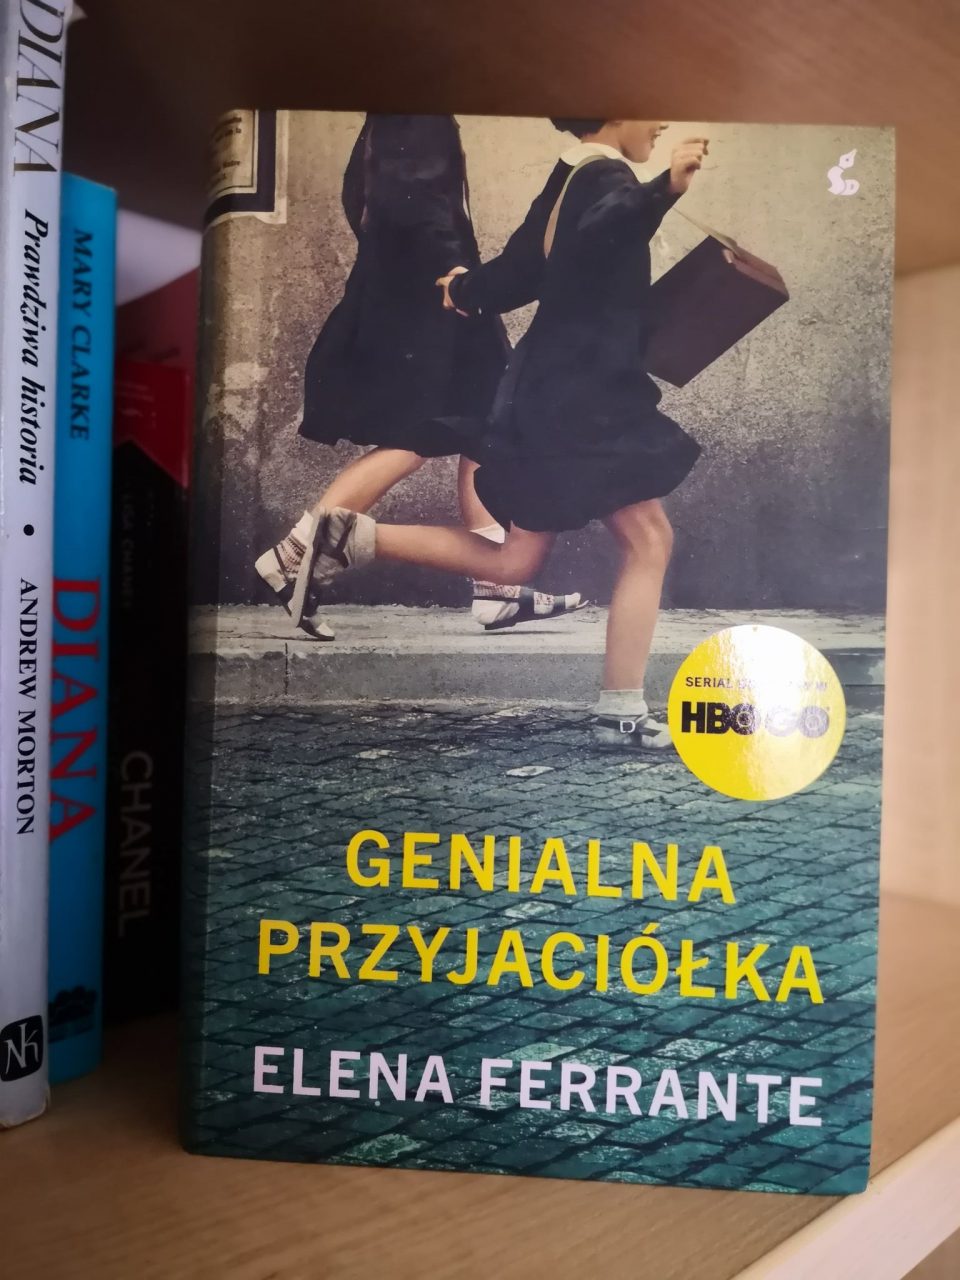 Kim jest Elena Ferrante?